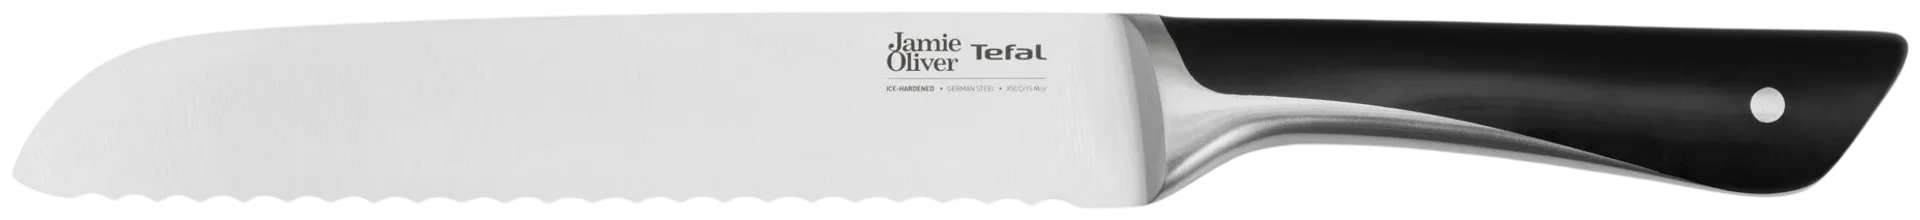 Tefal Jamie Oliver leipäveitsi 20 cm - 5